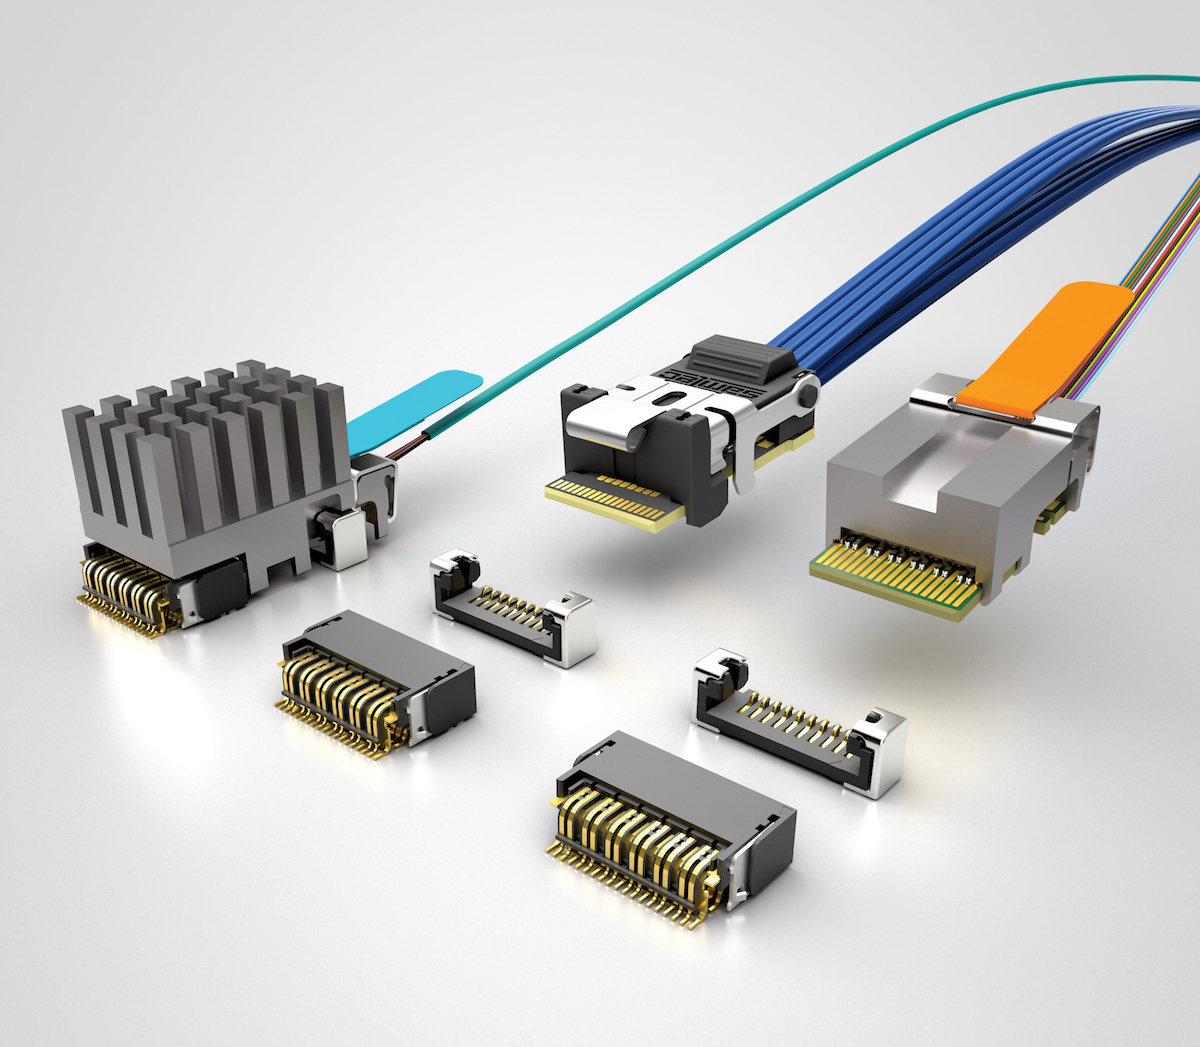 Fiber optic connectors from Samtec